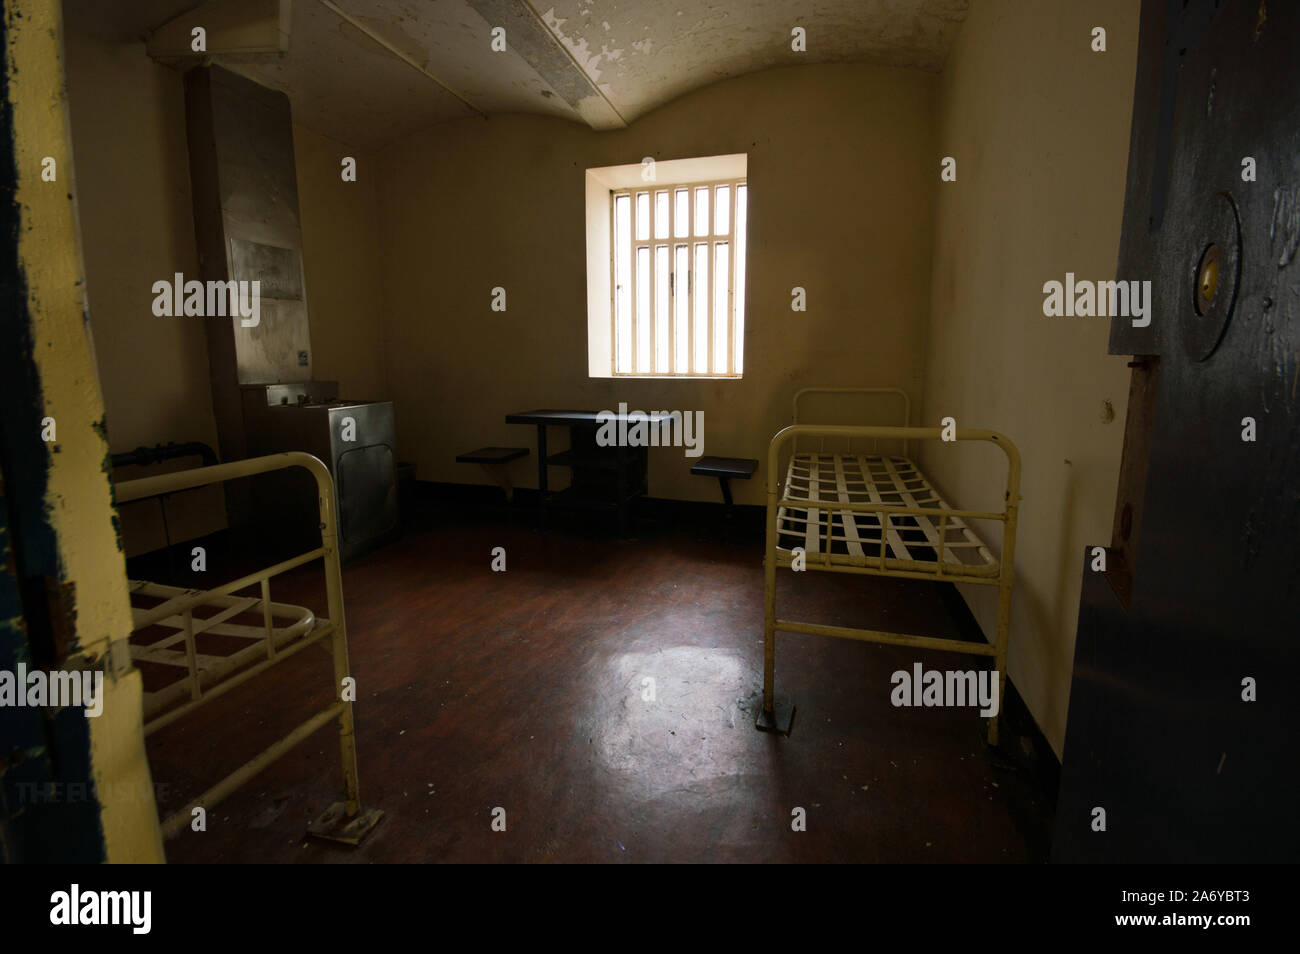 GLOUCESTER: Spärlich. Es gibt wenig Freude innerhalb der Grenzen des Gefängnisses. Schaurige Bilder aus Most Haunted "Gefängnis der britischen wo Serienmörder Fred Wes Stockfoto